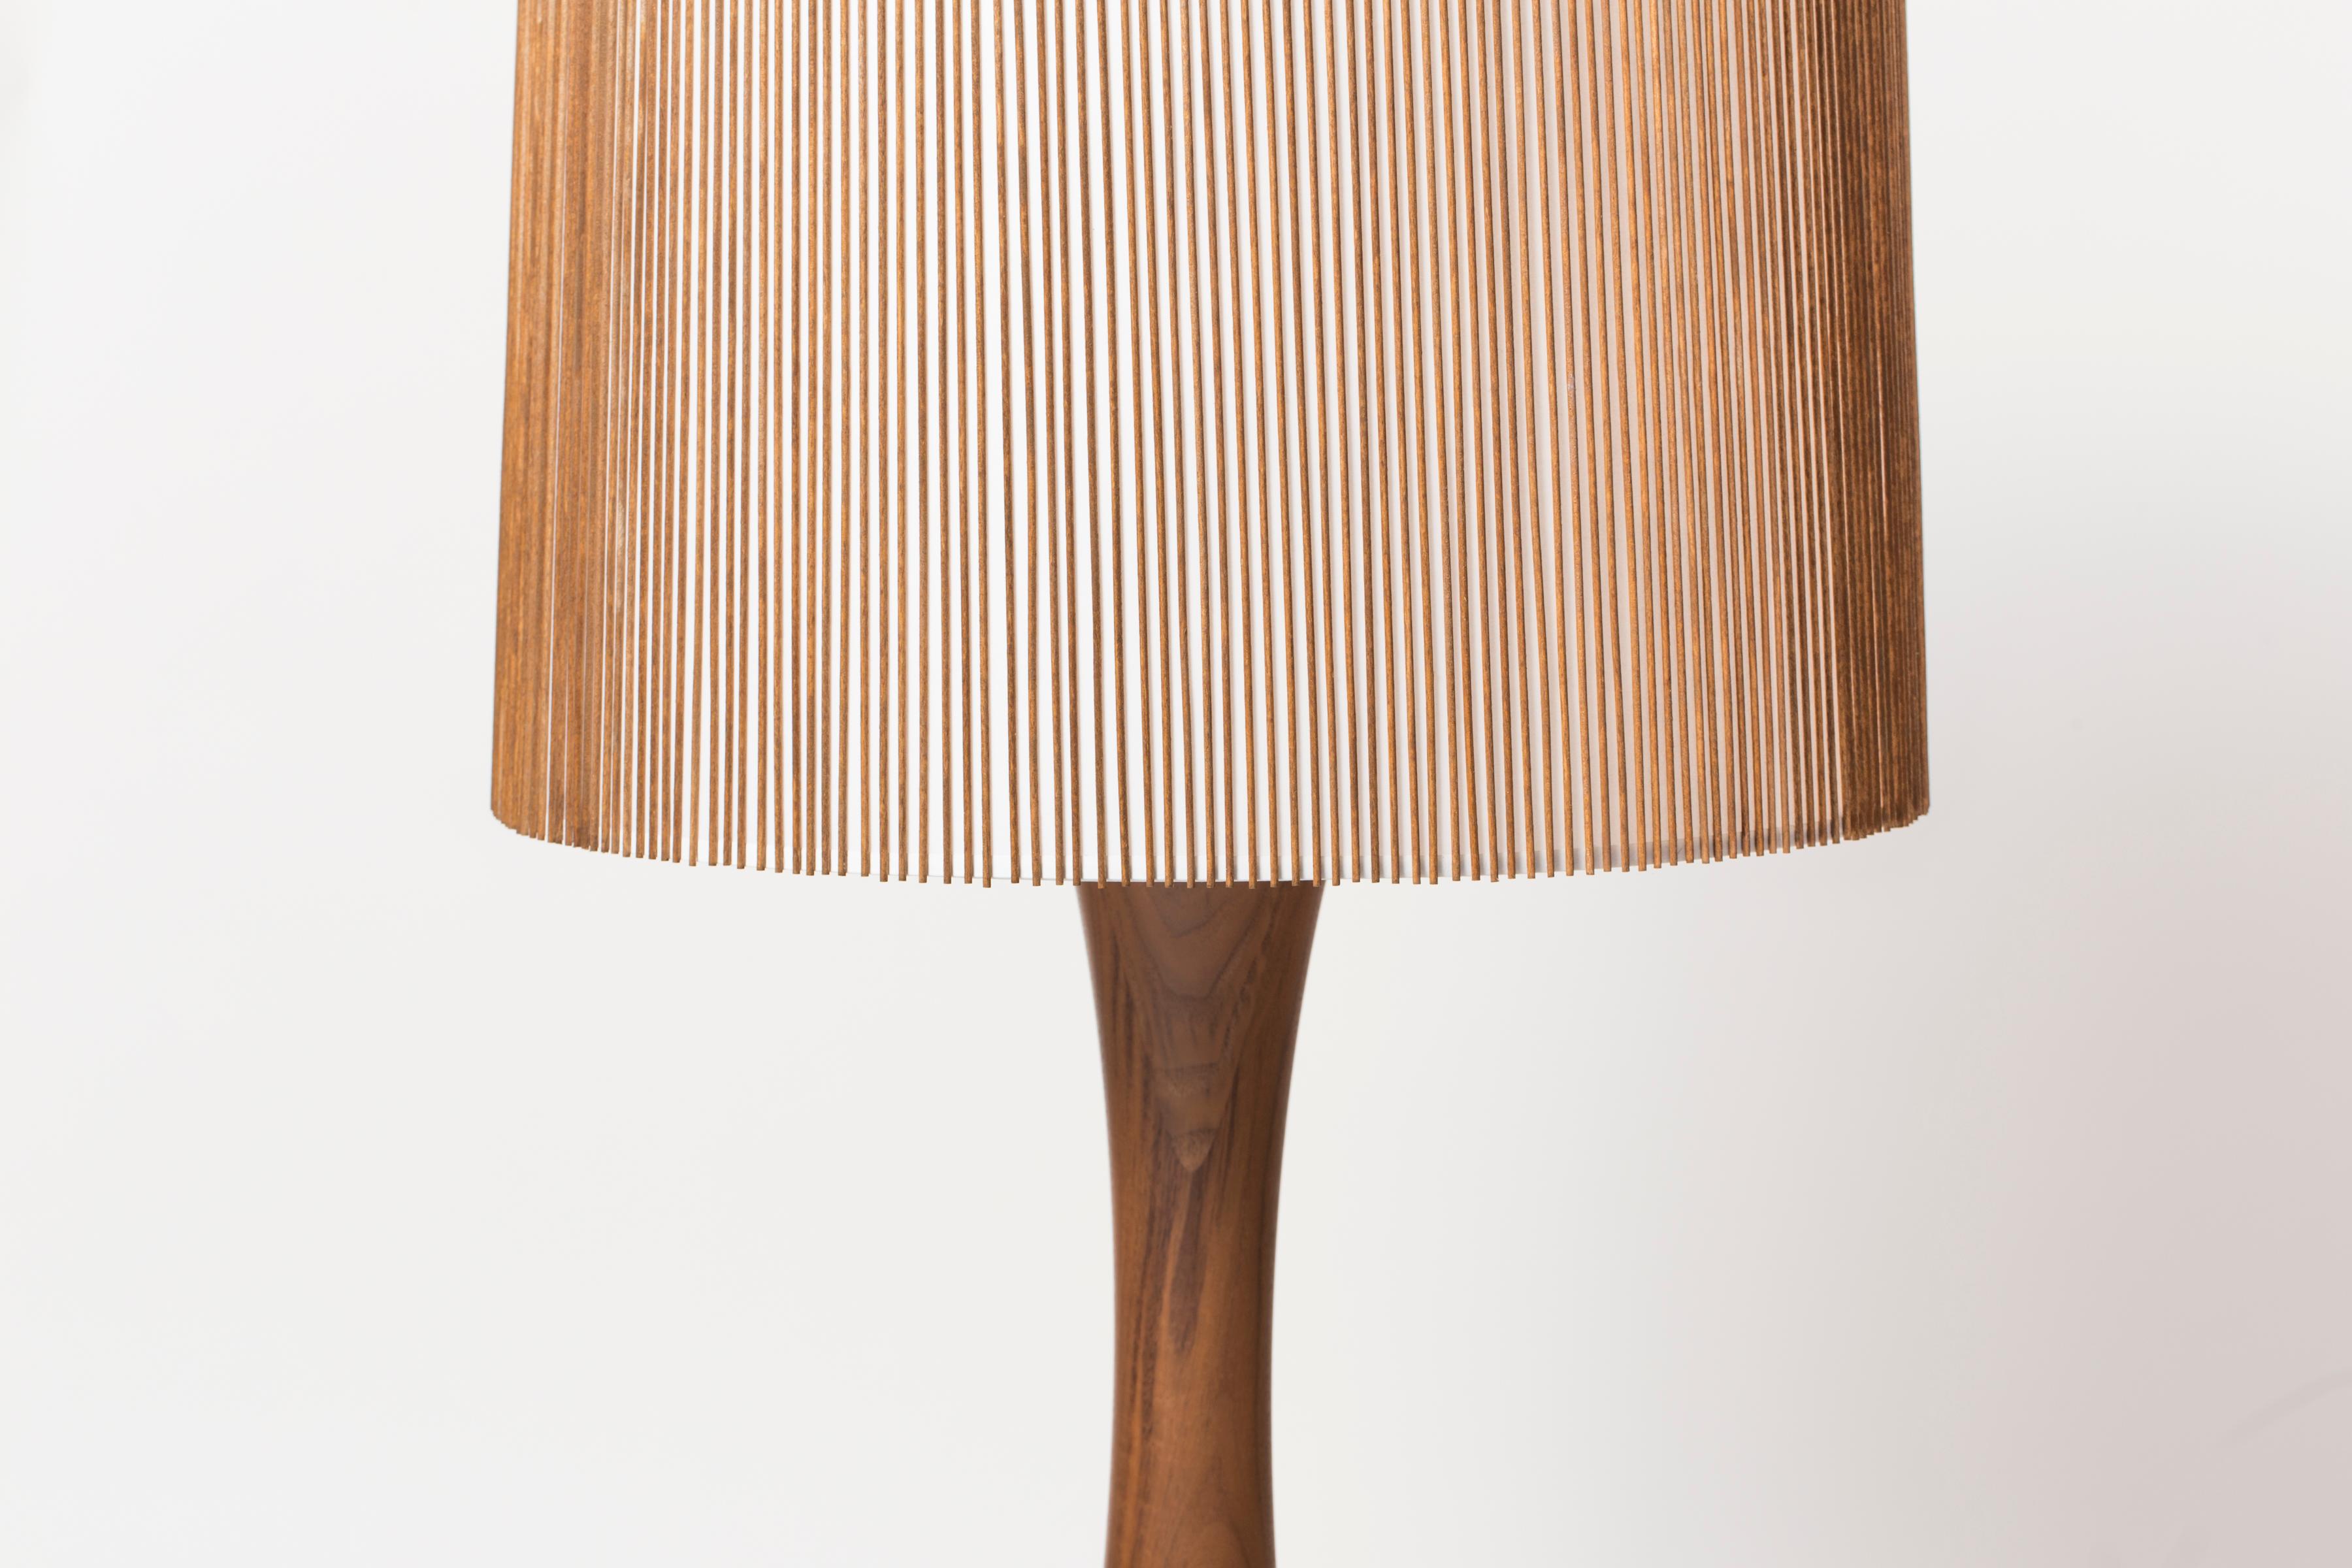 La lampe à poser Hourglass fait partie de la Collection Smilow Lighting rééditée, conçue à l'origine par Mel Smilow en 1956 et officiellement réintroduite par sa fille Judy Smilow en 2017. Les pièces sculpturales et inspirées de la nature de cette